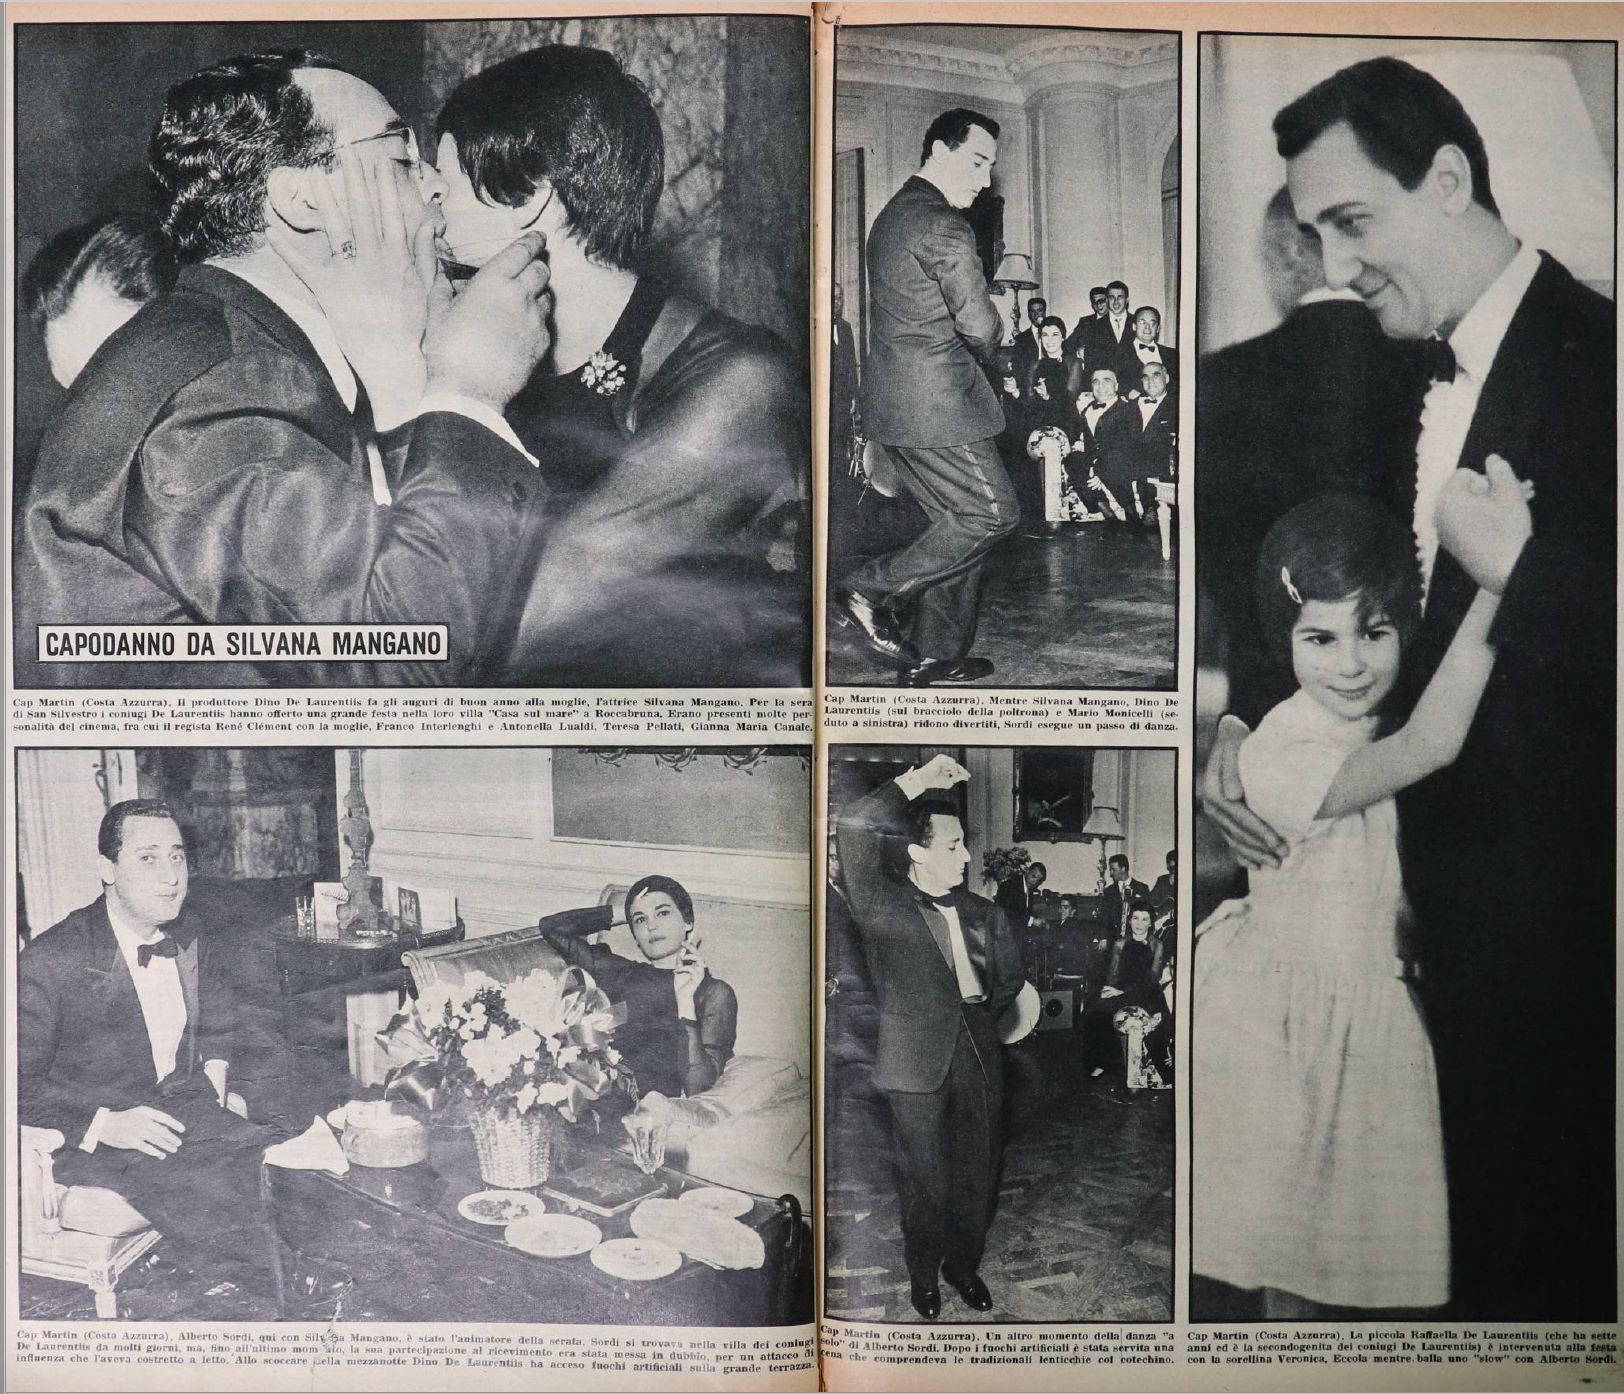 Fig. 5 S.A., &lsquo;Capodanno da Silvana Mangano&rsquo;, Oggi, 2, 14/01/1960, p. 5.
